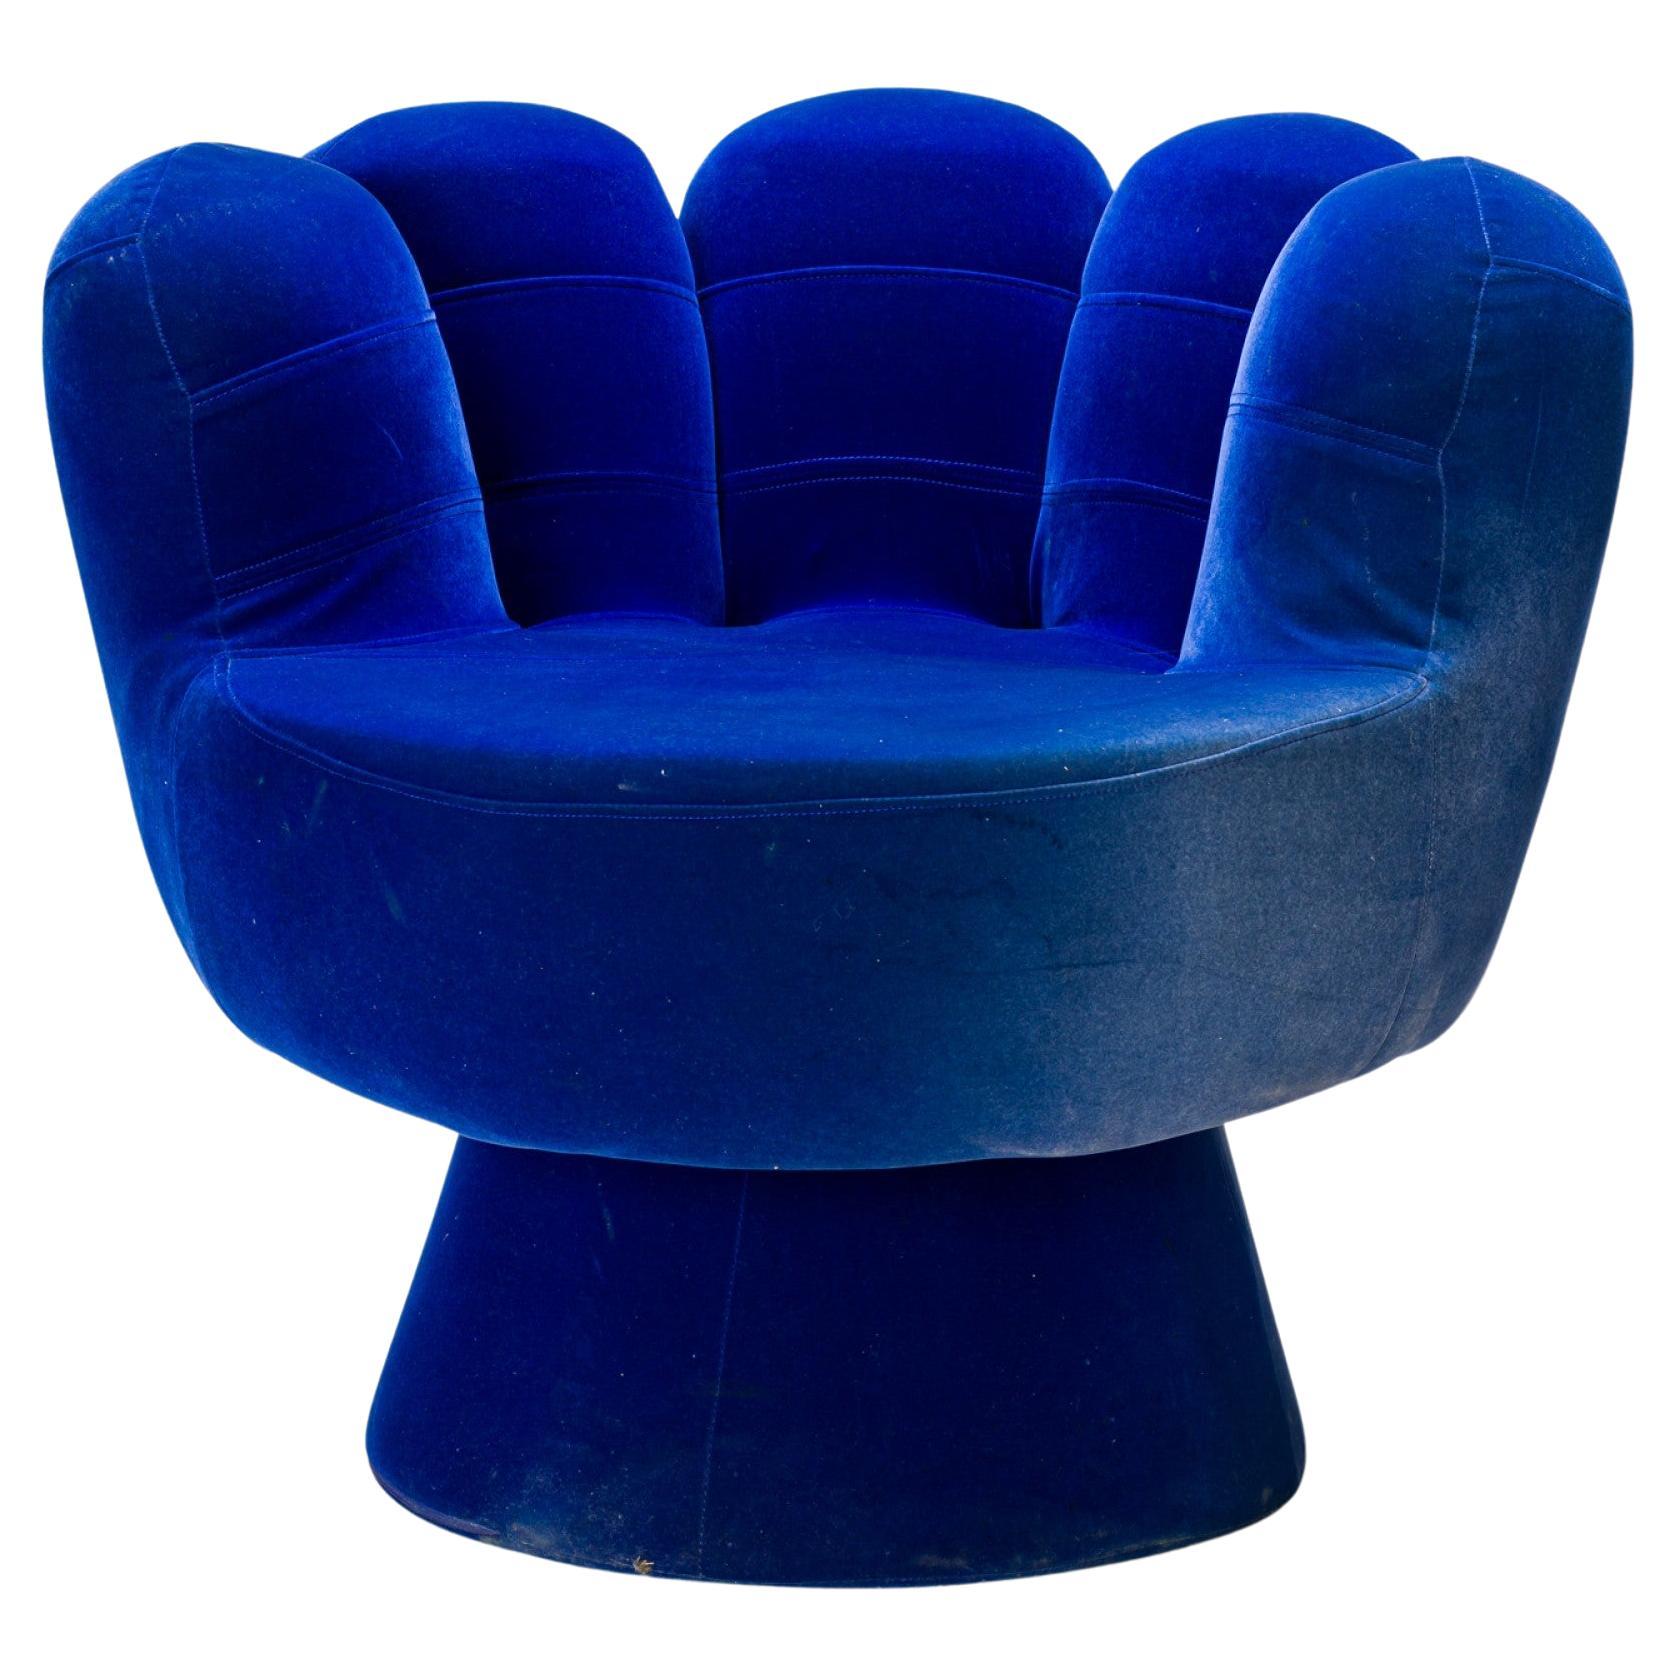 Pop Art Style Blue Velour Upholstered Hand Chair